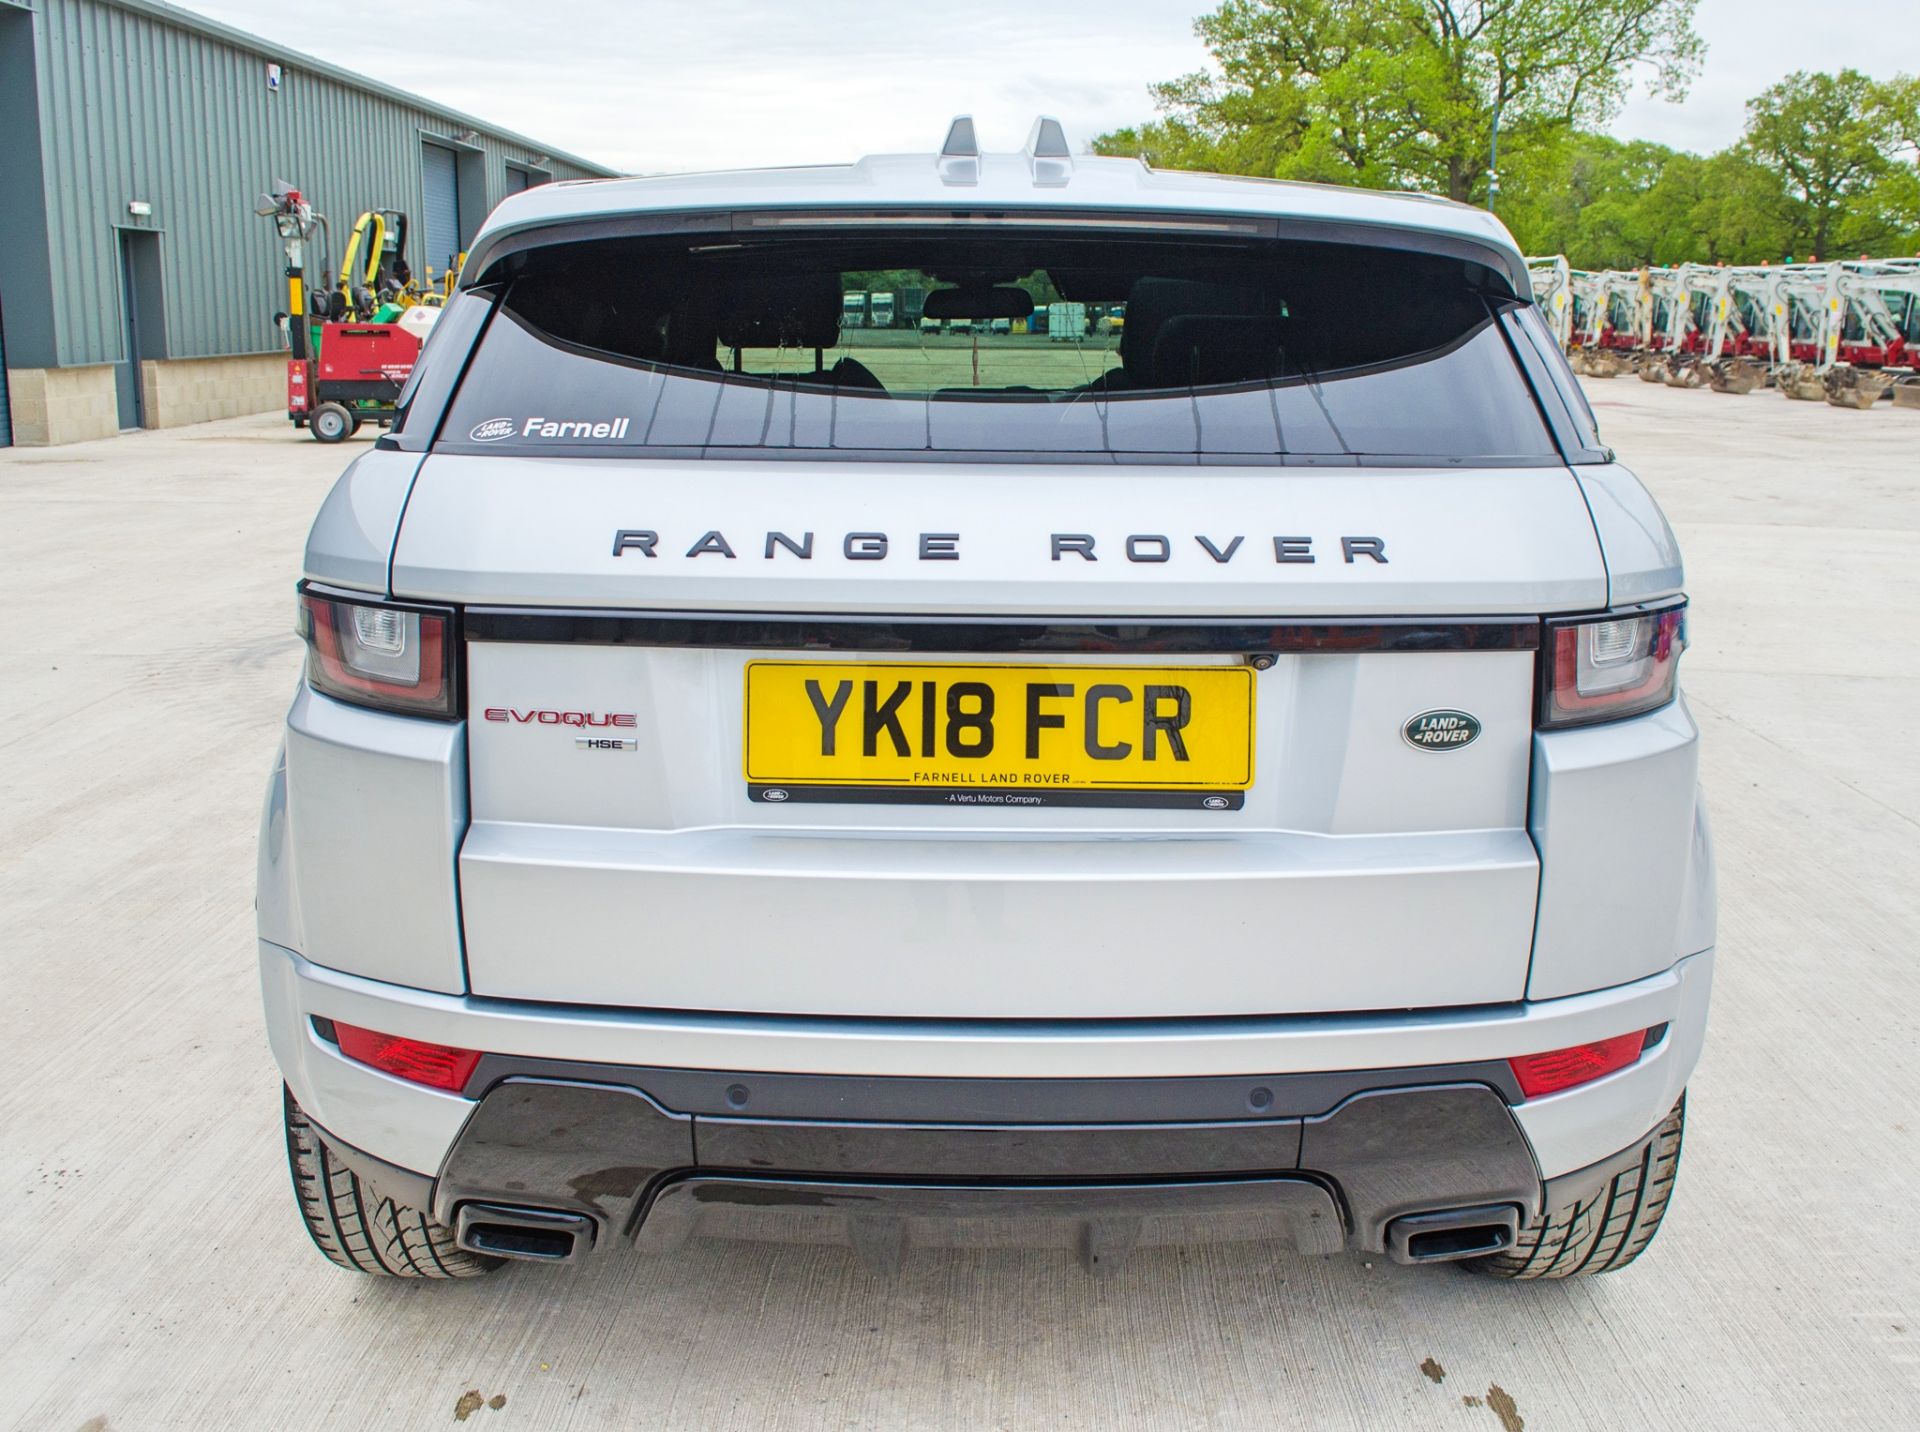 Range Rover Evoque HSE Dynamic 2.0 TD 4WD 5 door hatchback car Registration Number: YK18 FCR Date of - Image 6 of 31